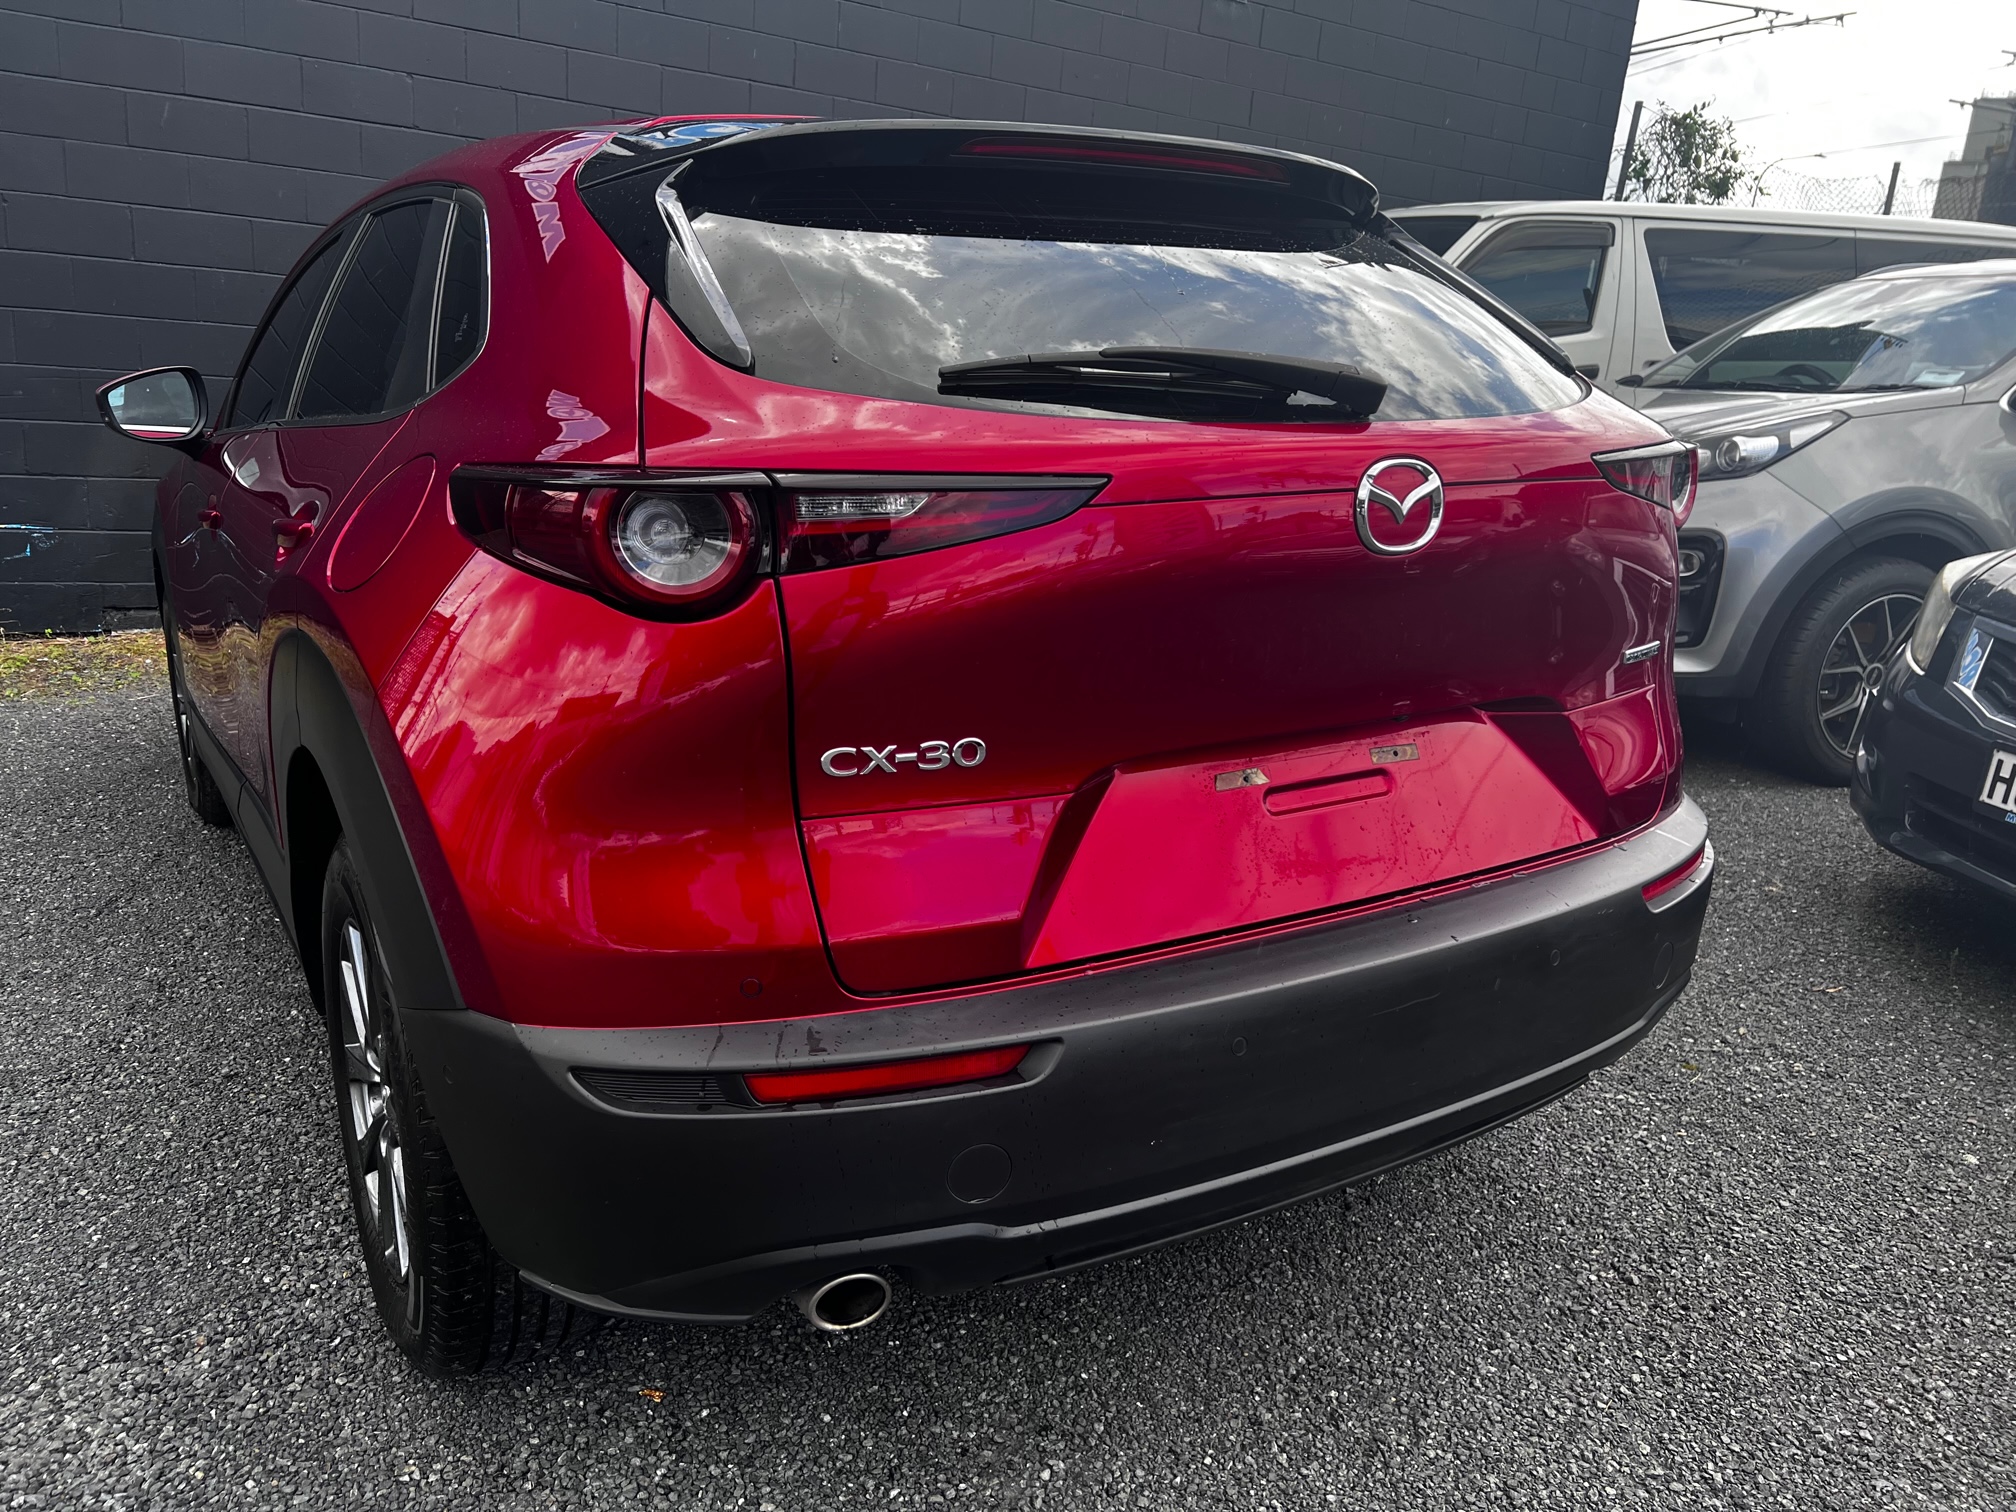 Mazda CX-30 2020 Image 6